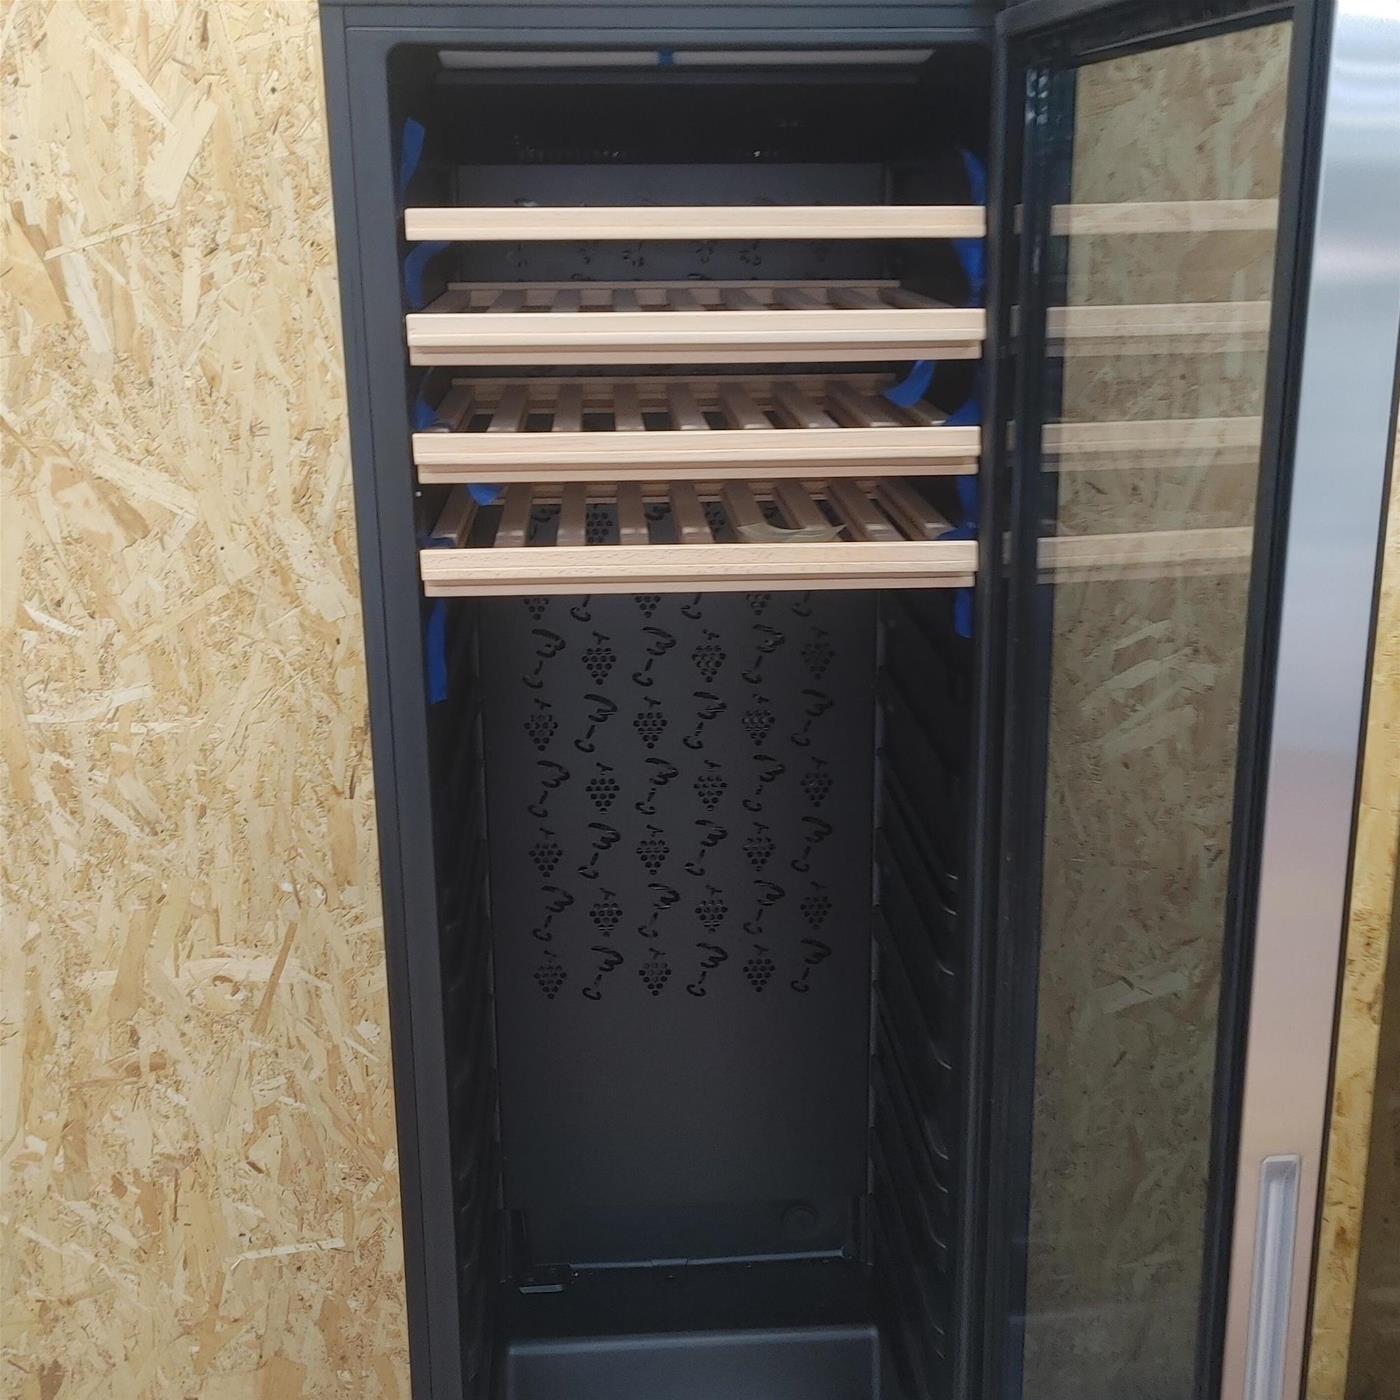 Haier Wine Bank 60 Serie 3 WS171GA Cantinetta frigo con compressore Libera installazione Nero 166 bottiglia(e)21 bottiglia(e)